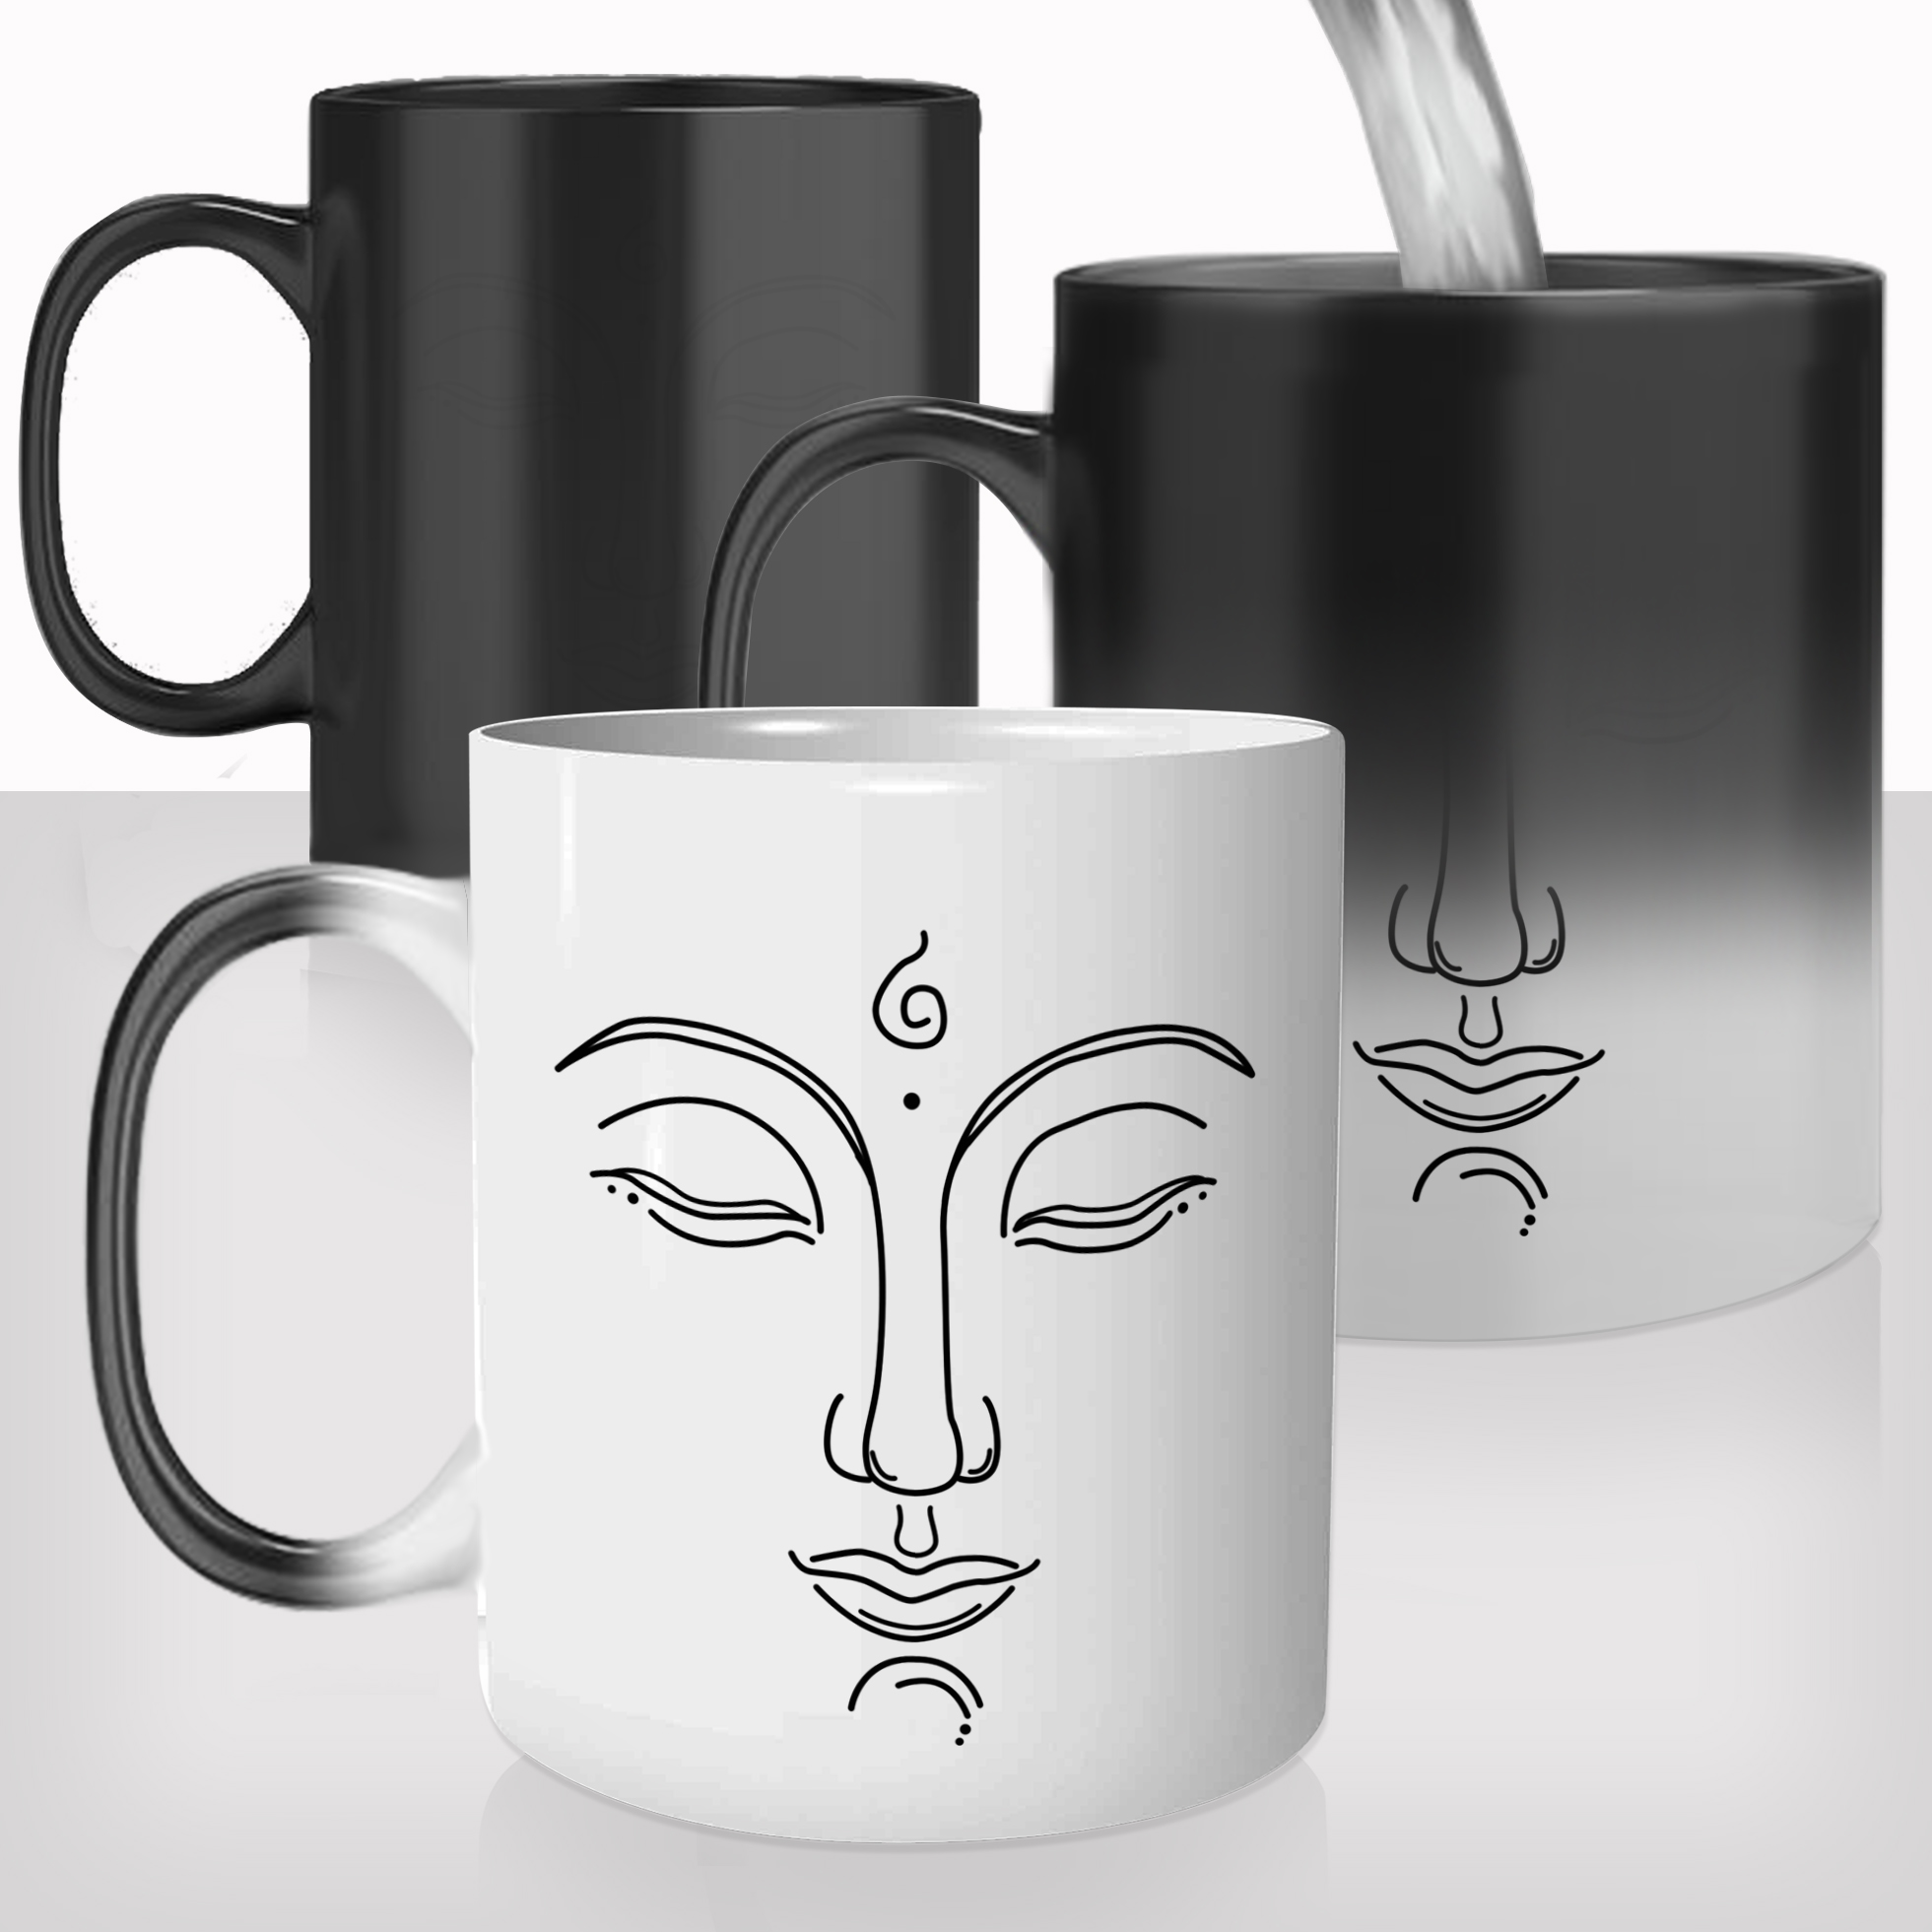 mug-magique-personnalisable-thermo-reactif-thermique-bouddha-bouddhisme-yoga-décoration-photo-personnalisable-cadeau-original-fun